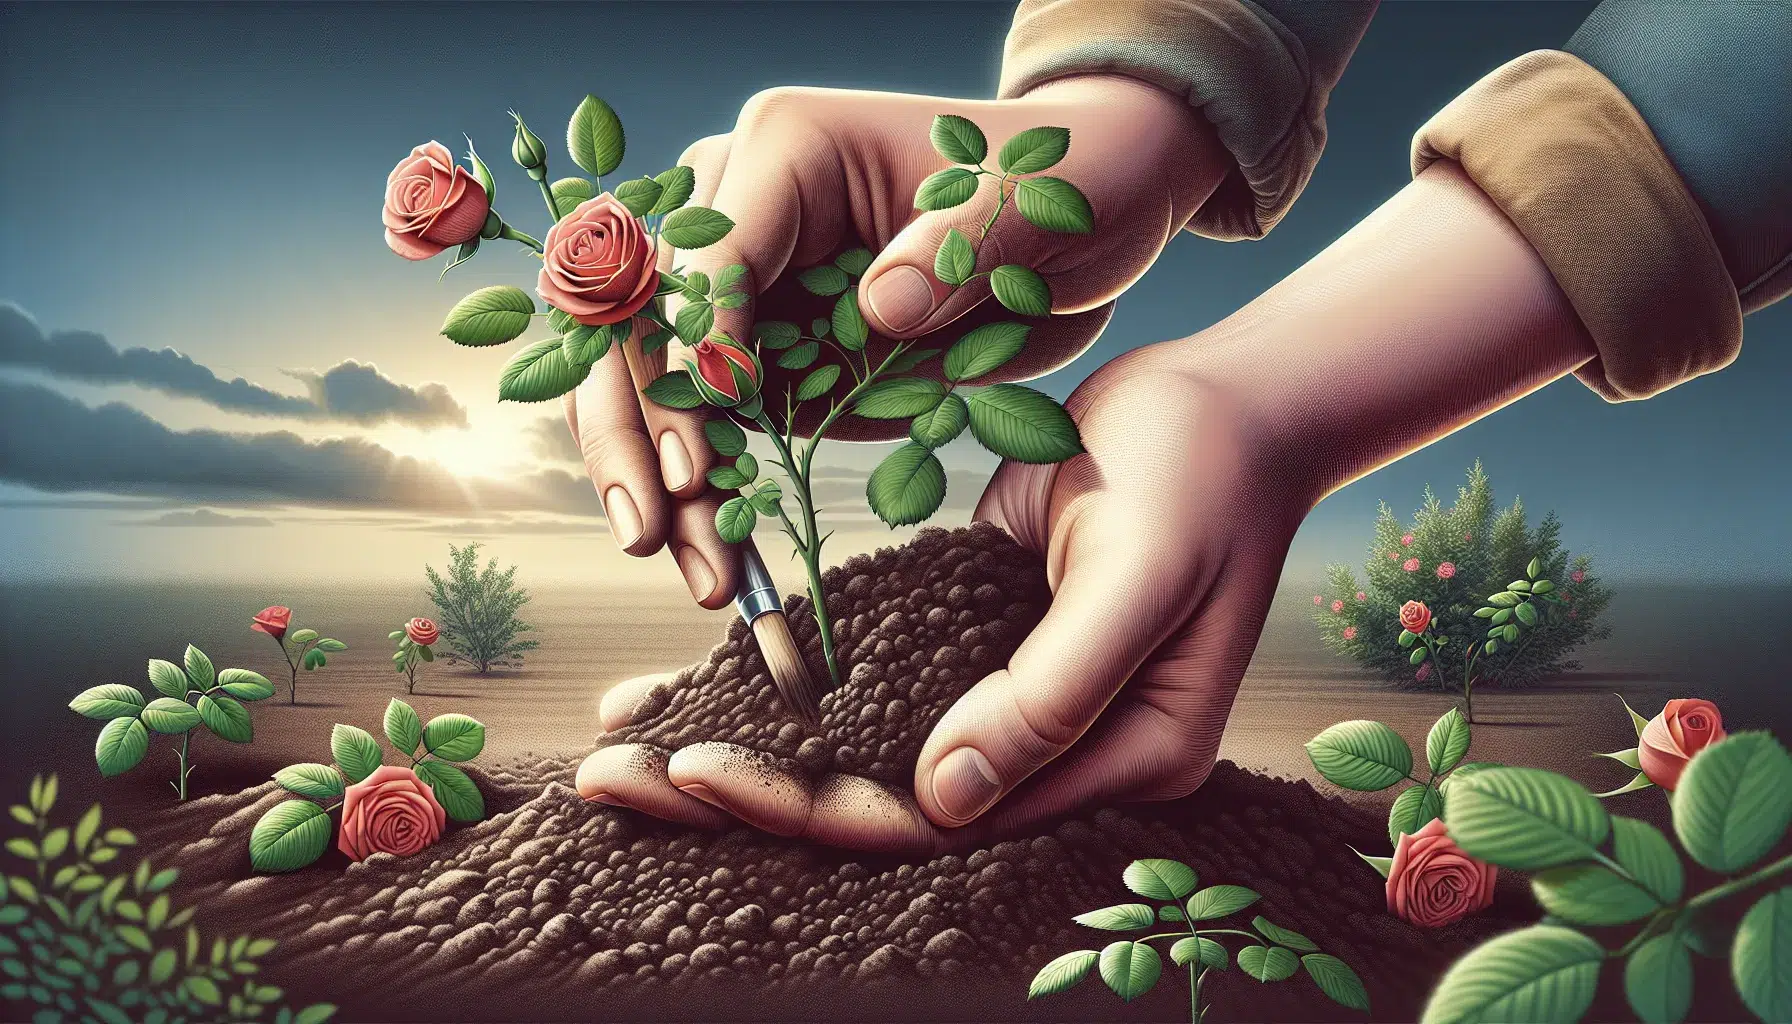 Imagen de un par de manos plantando un rosal en un jardín, mostrando la técnica fácil y sencilla para tener rosales en tu hogar.